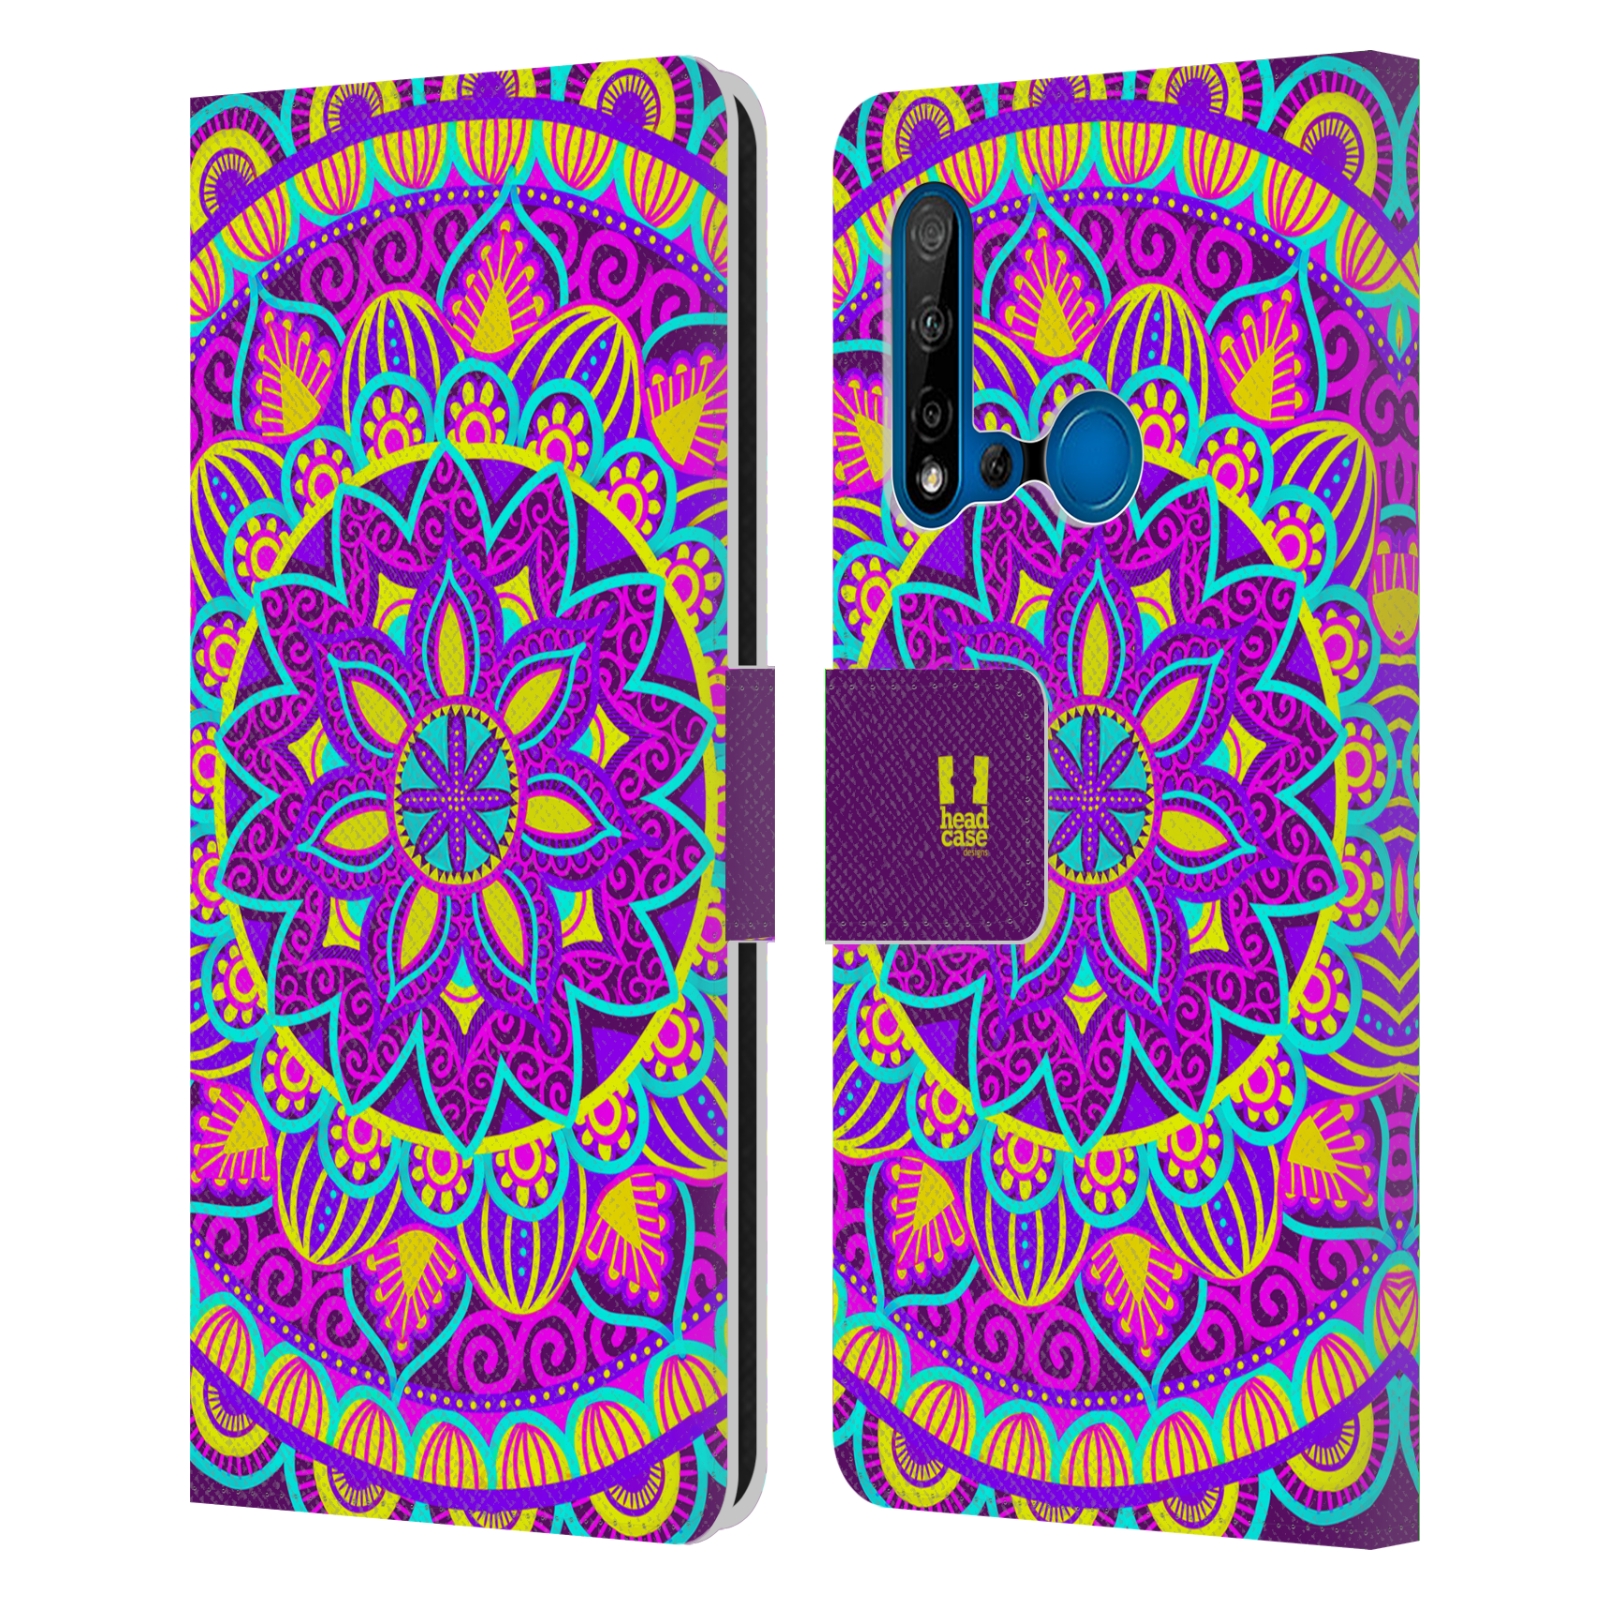 Pouzdro na mobil Huawei P20 LITE 2019 květinová mandala barevná fialová